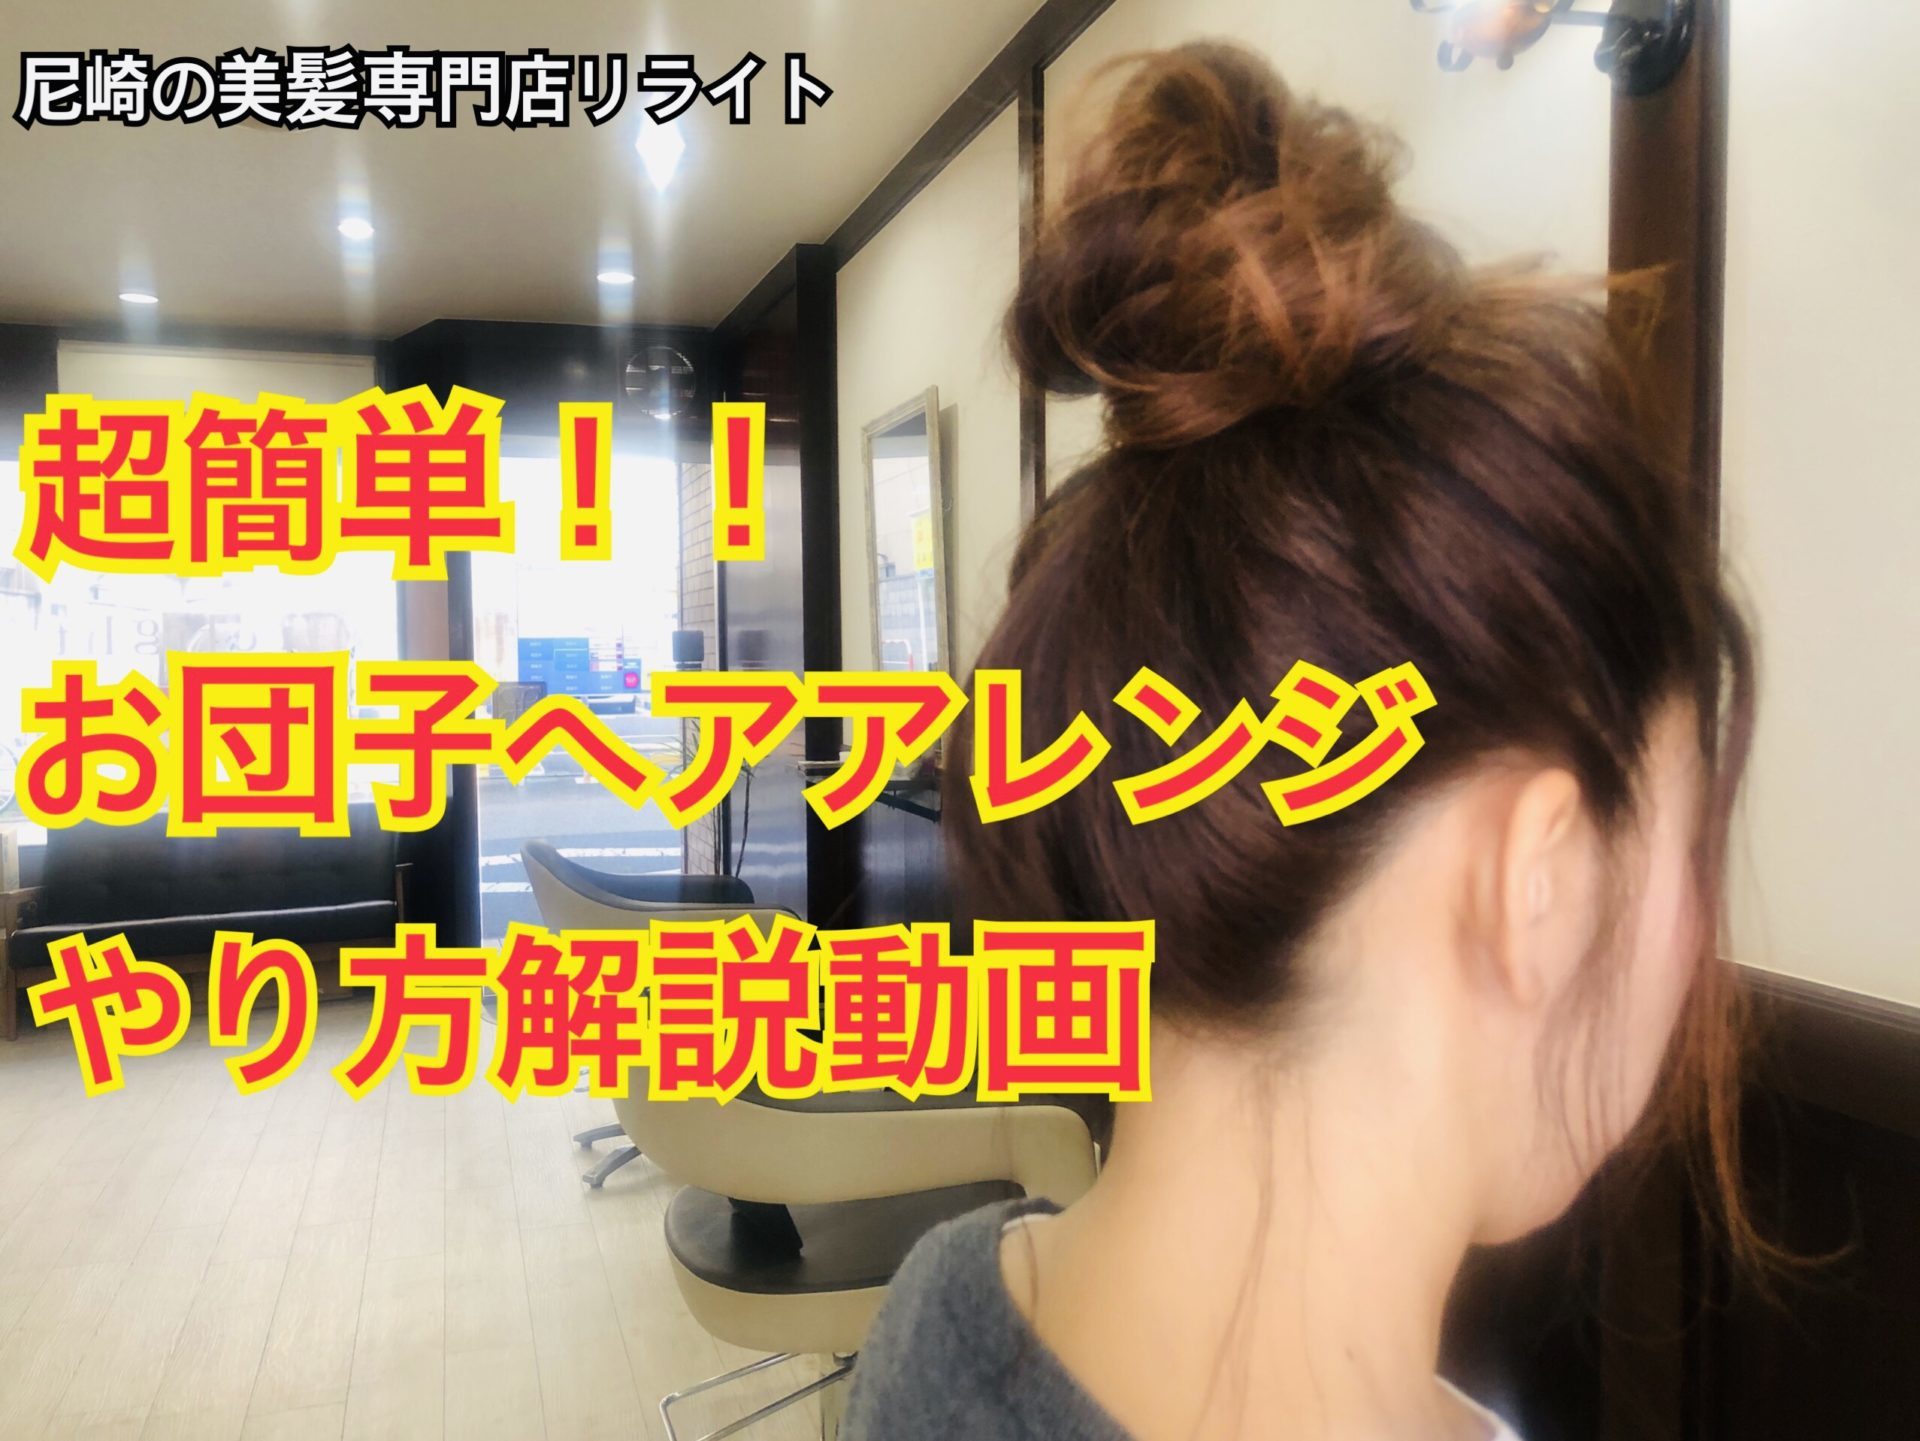 超簡単 自分でできるお団子ヘアアレンジのやり方動画解説 尼崎の美容室リライト